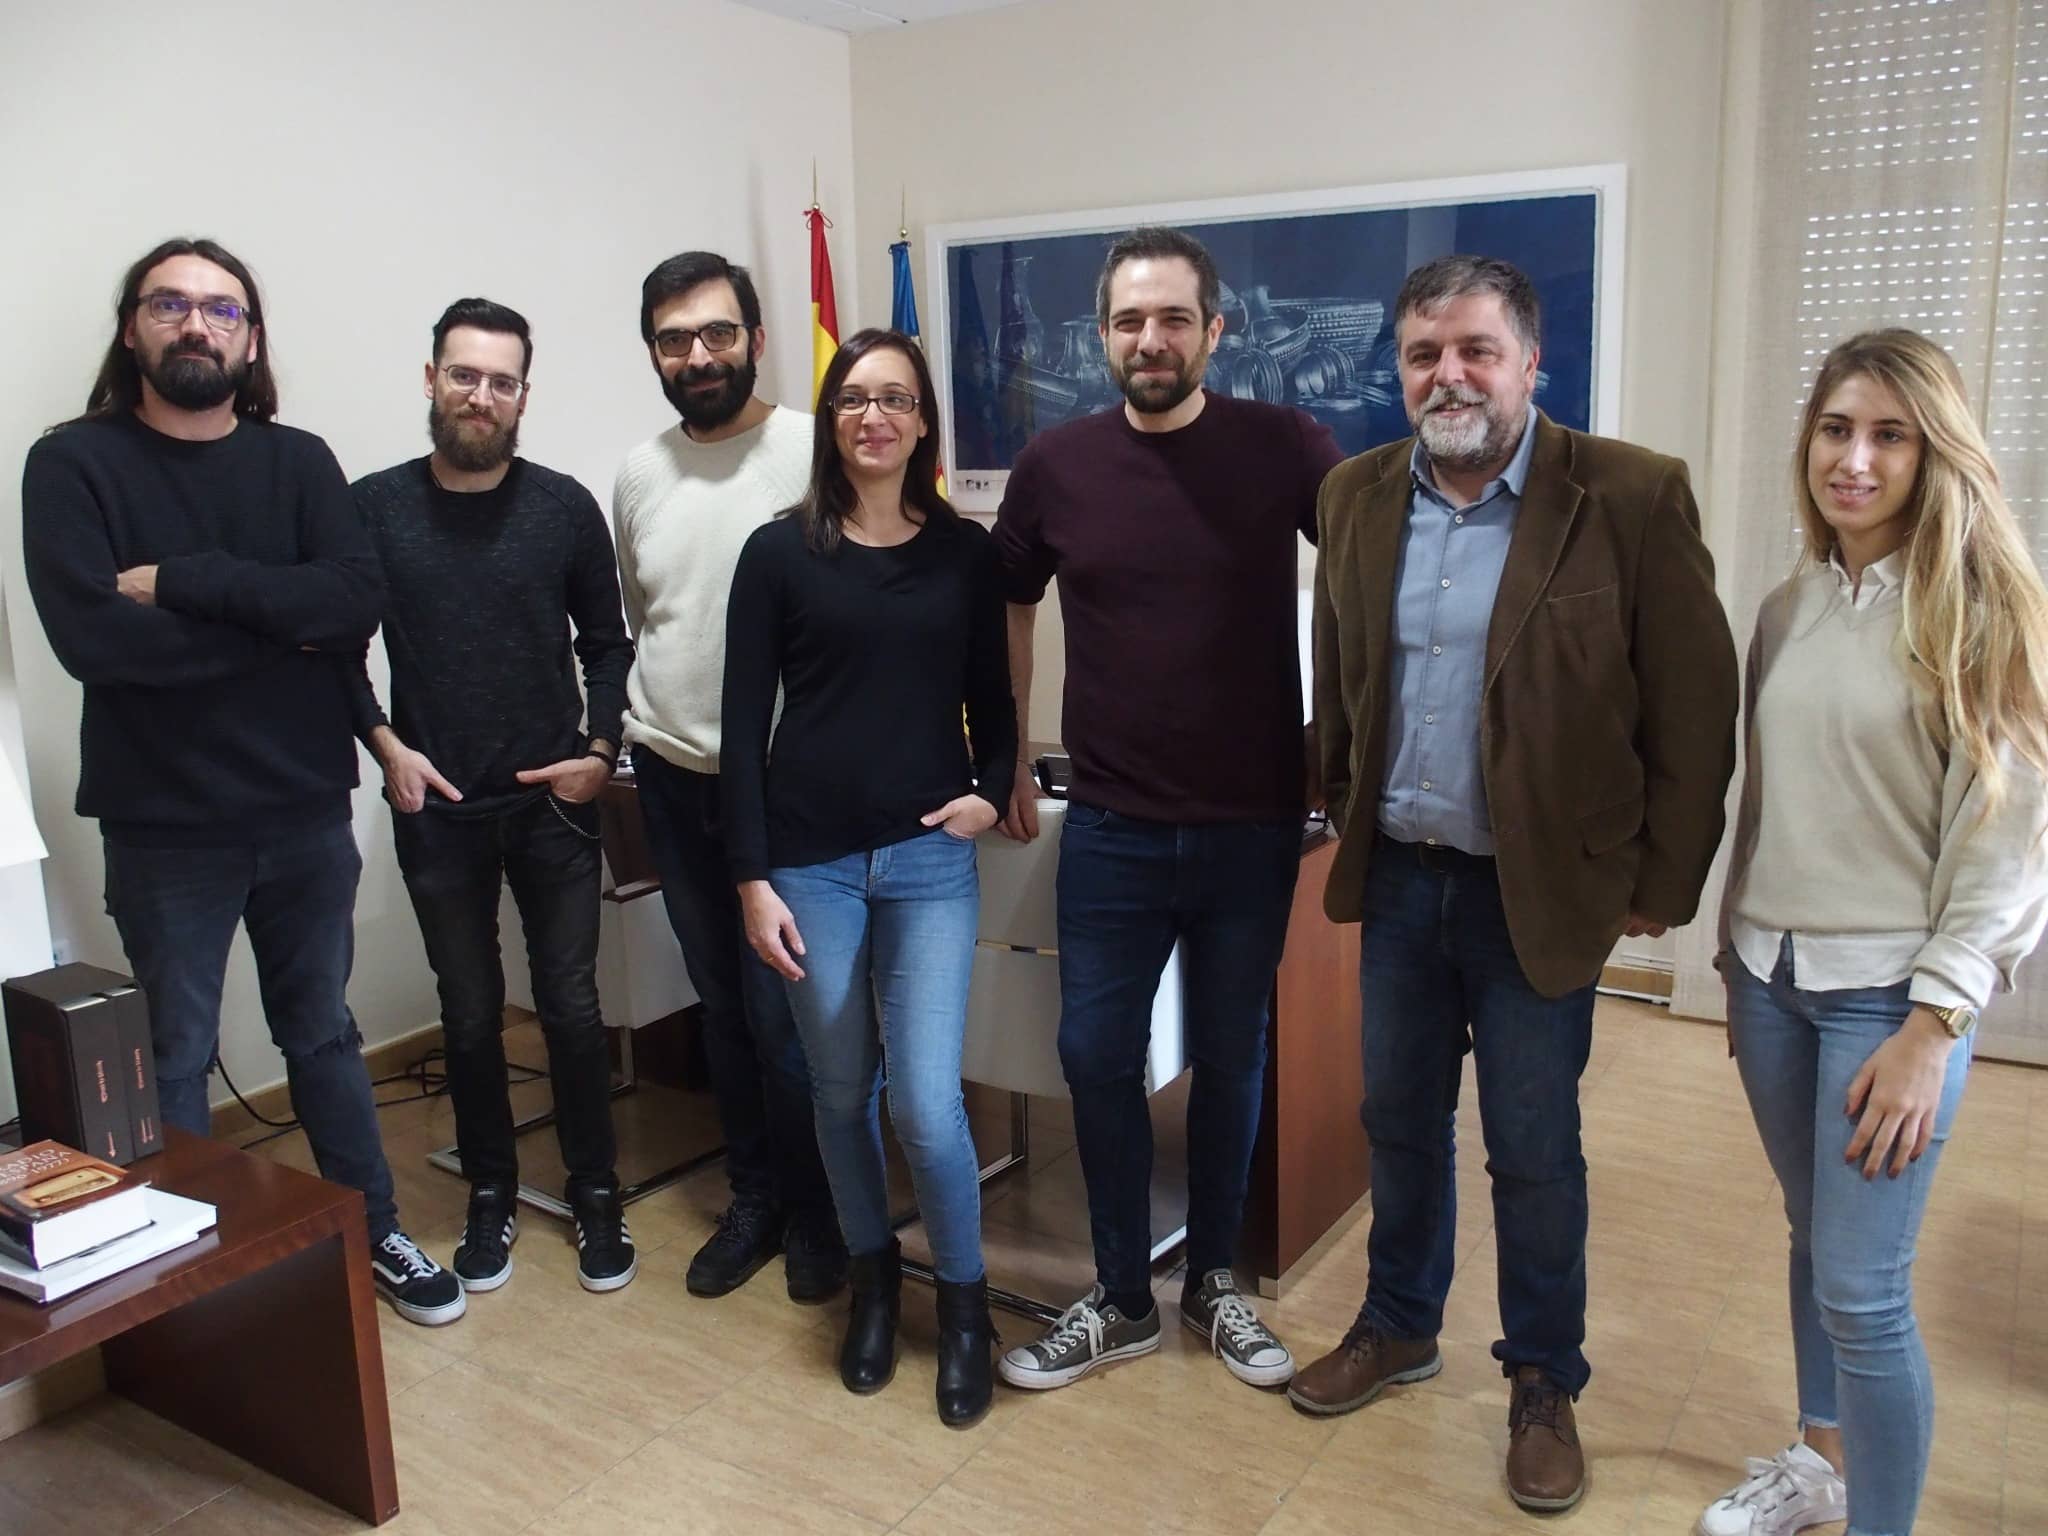 Una empresa villenense gana el premio “Audiovisual Valenciano 2019  al mejor videojuego